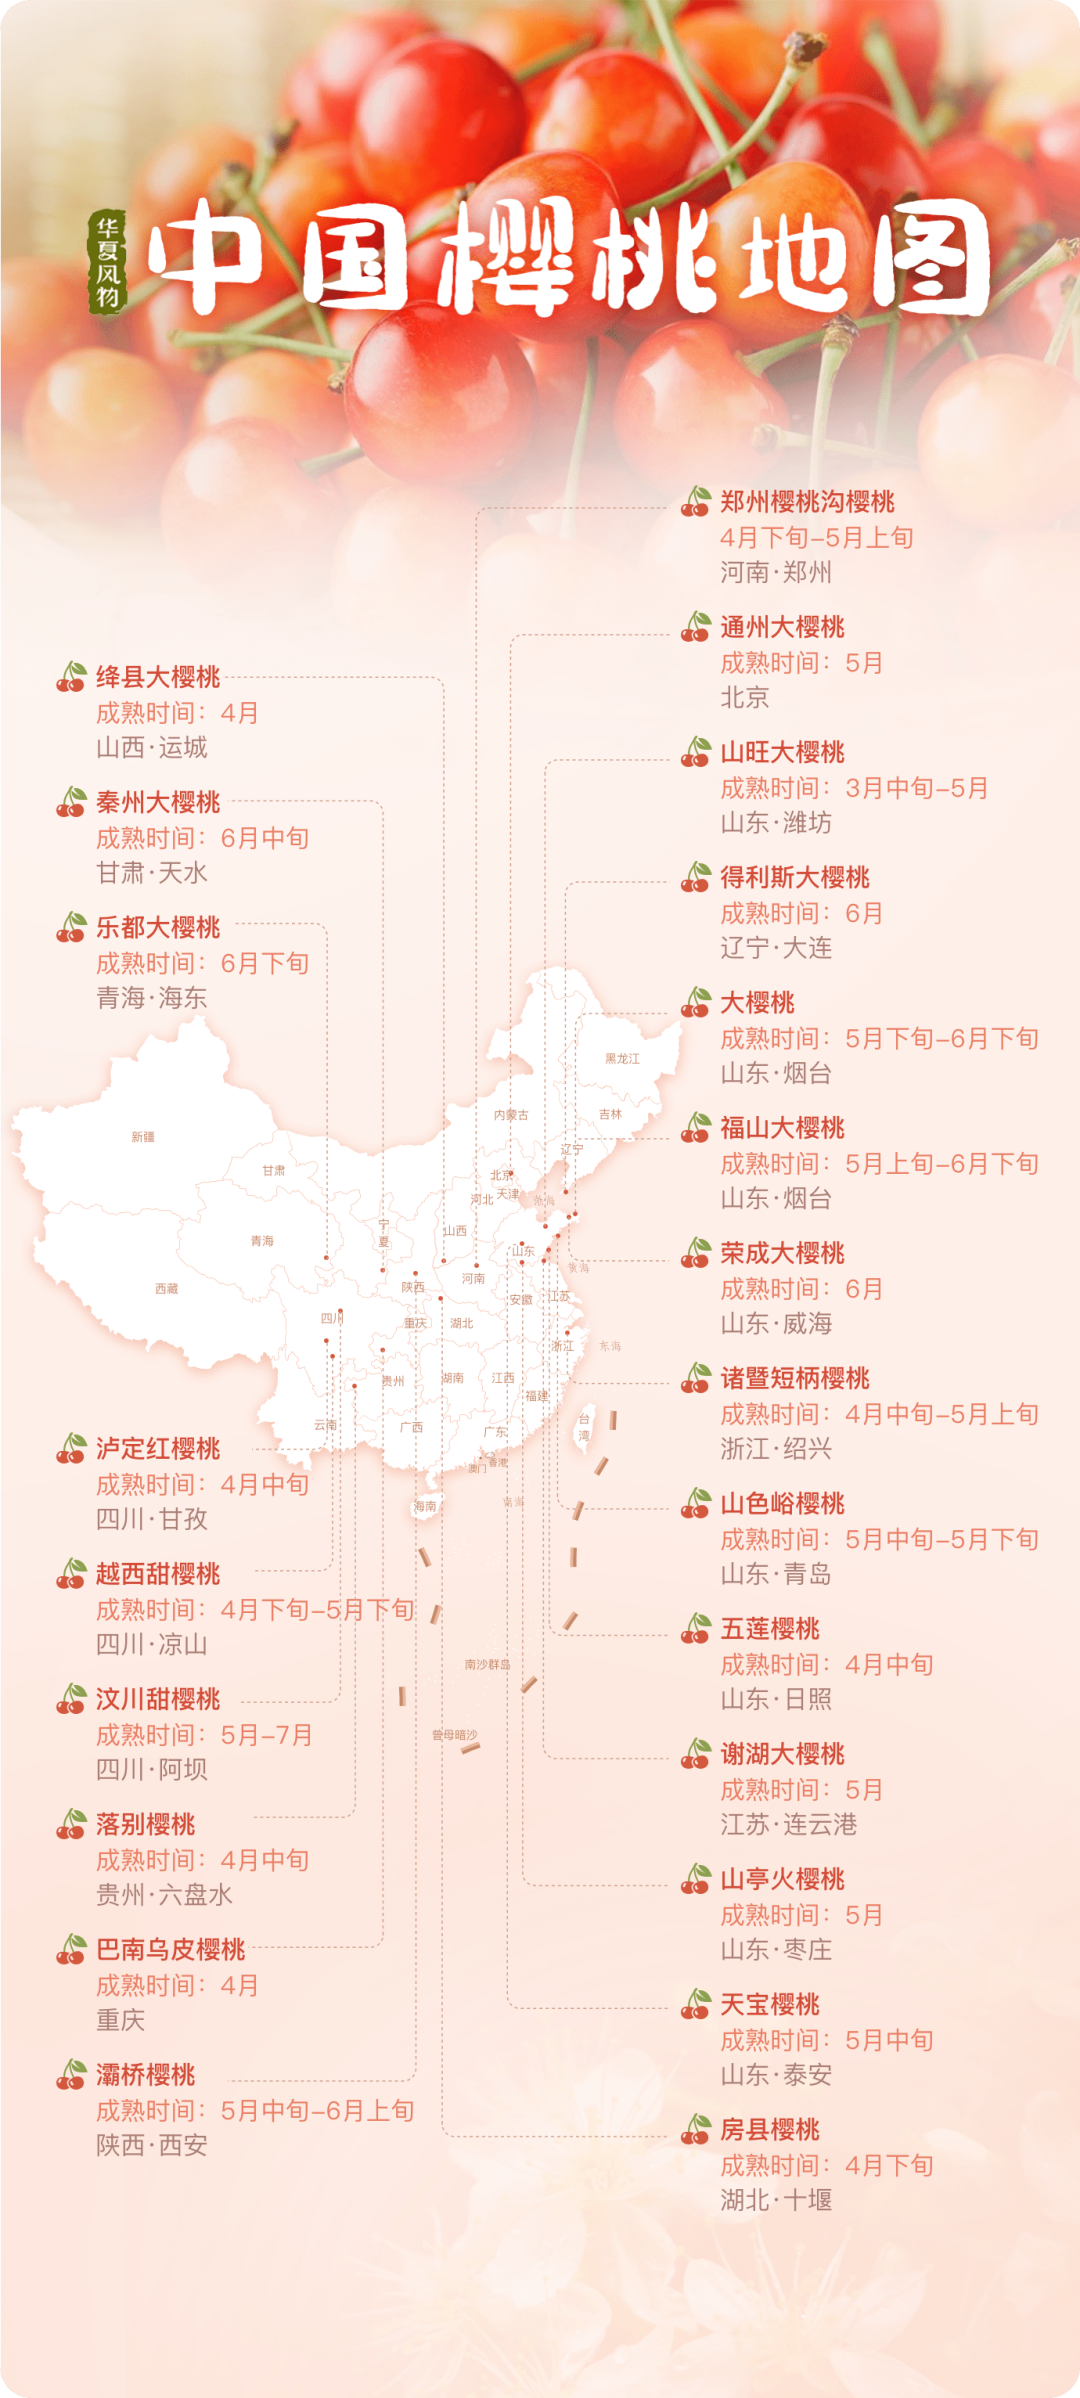 中国樱桃地图 ©华夏风物